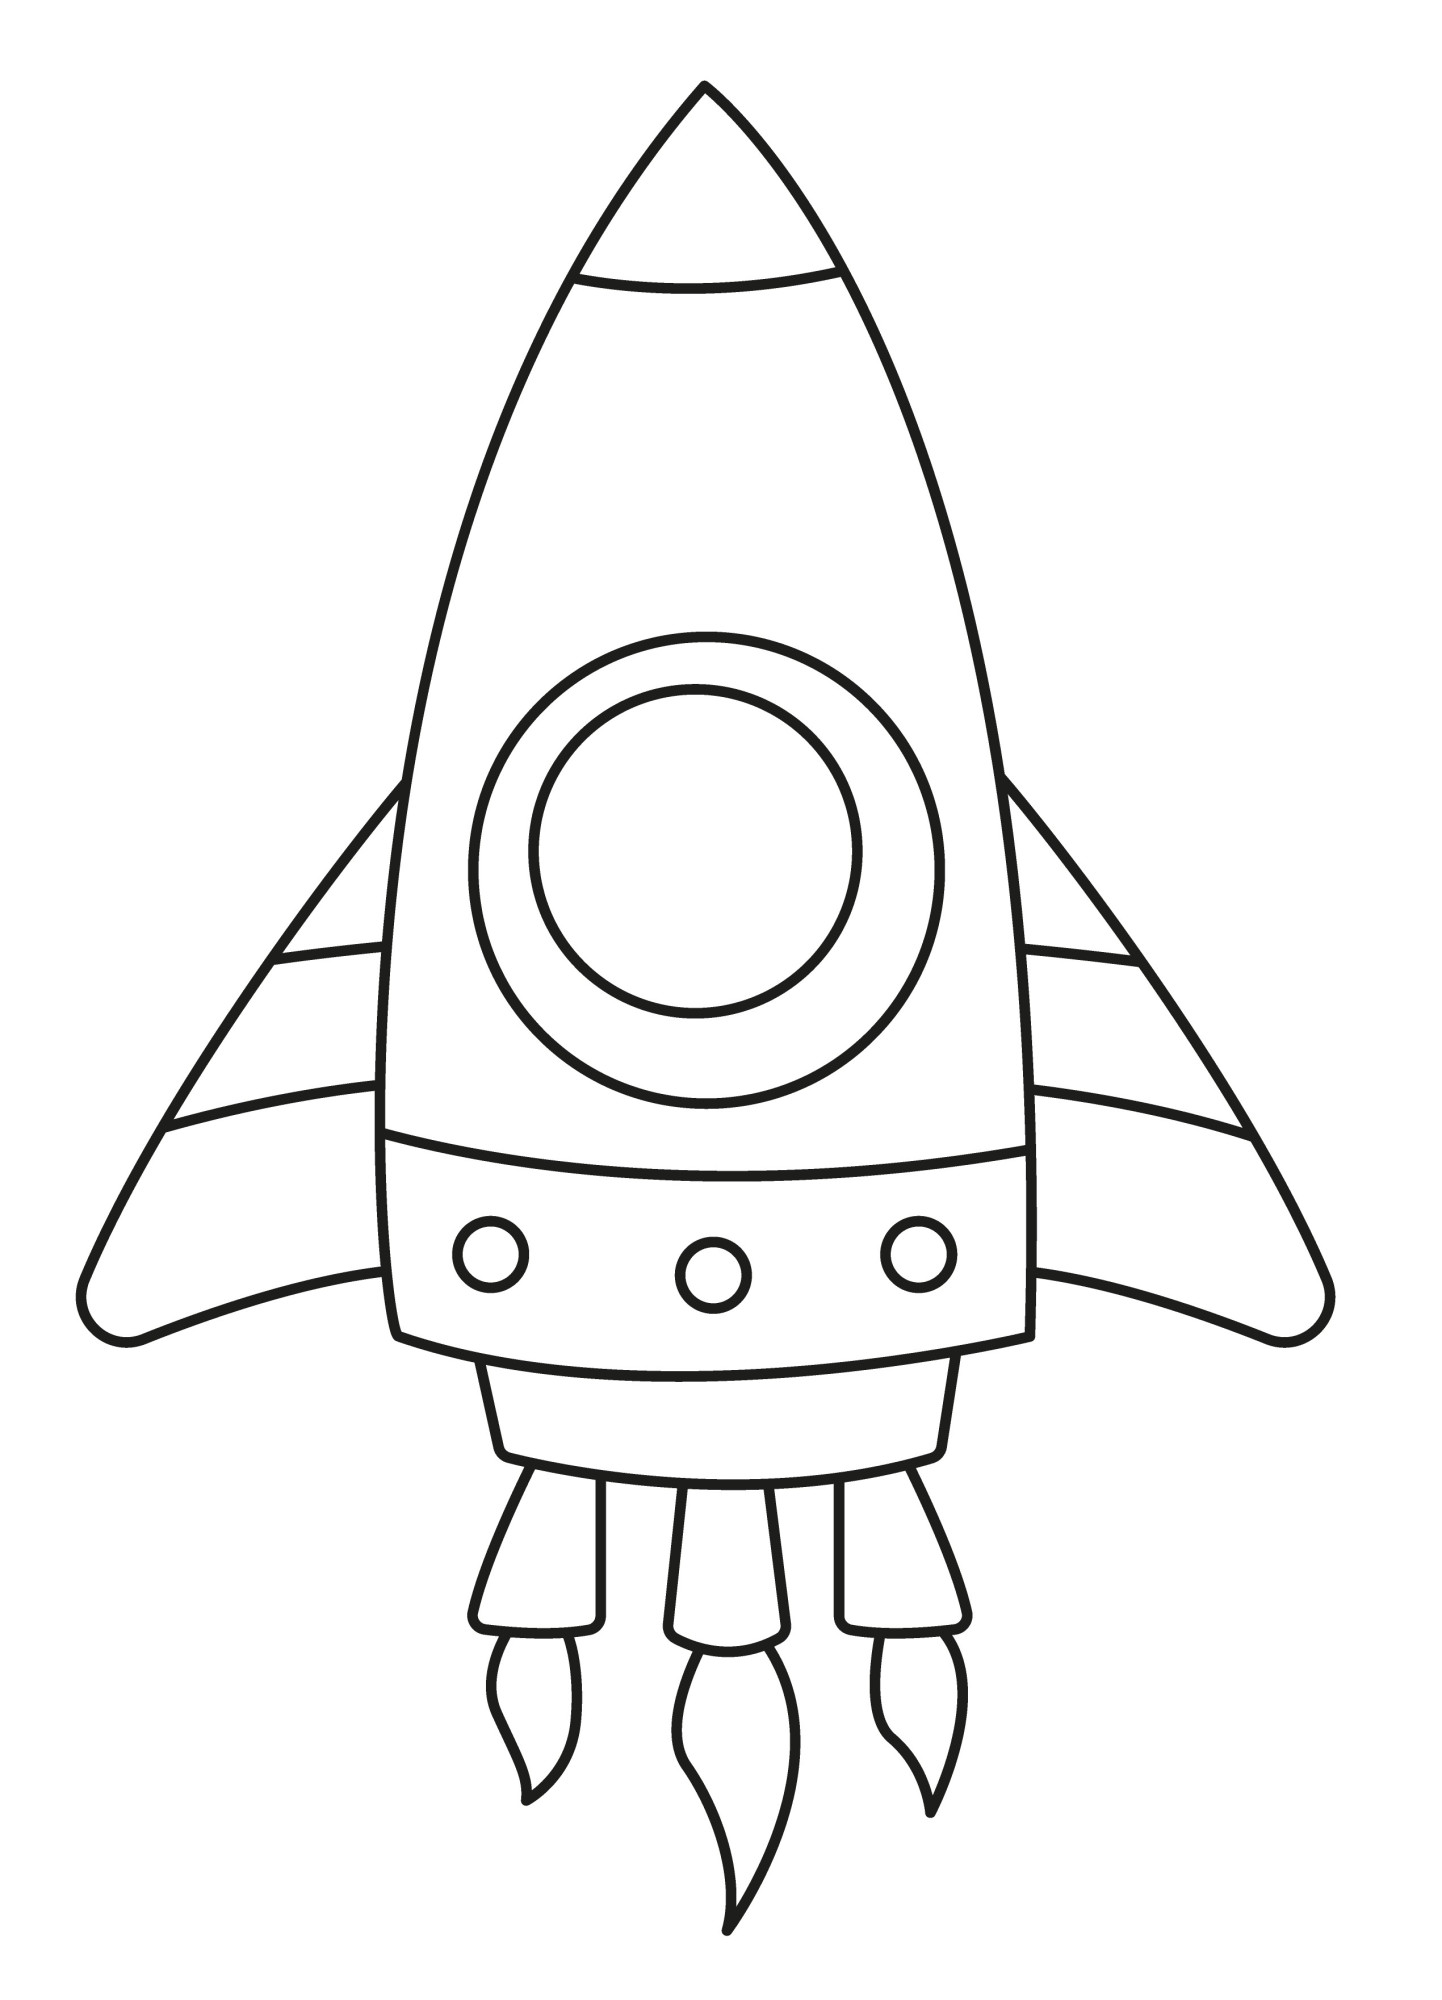 Раскраска для детей: игрушка космическая ракета с крыльями